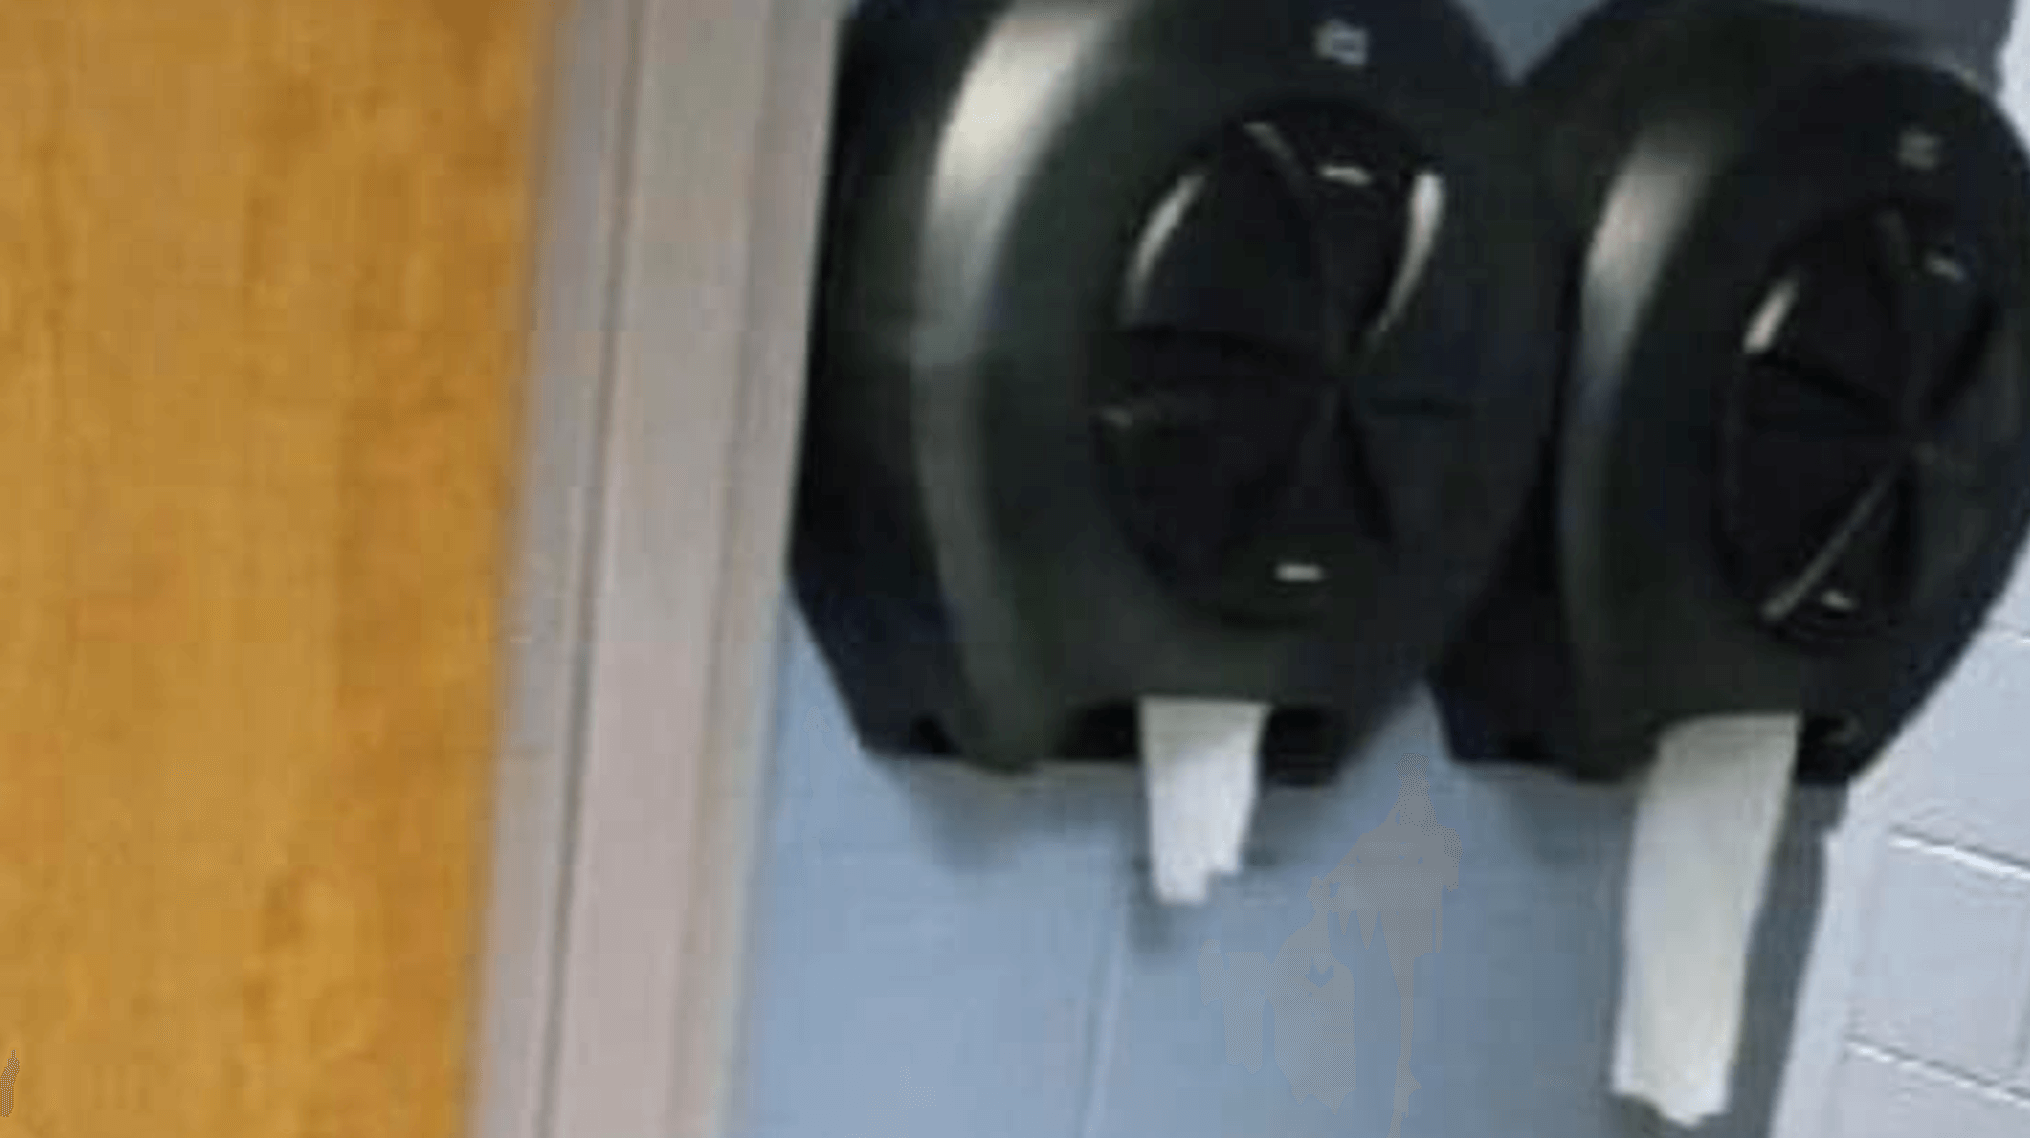 School Relocates Toilet Paper Dispensers Amid Vandalism Concerns